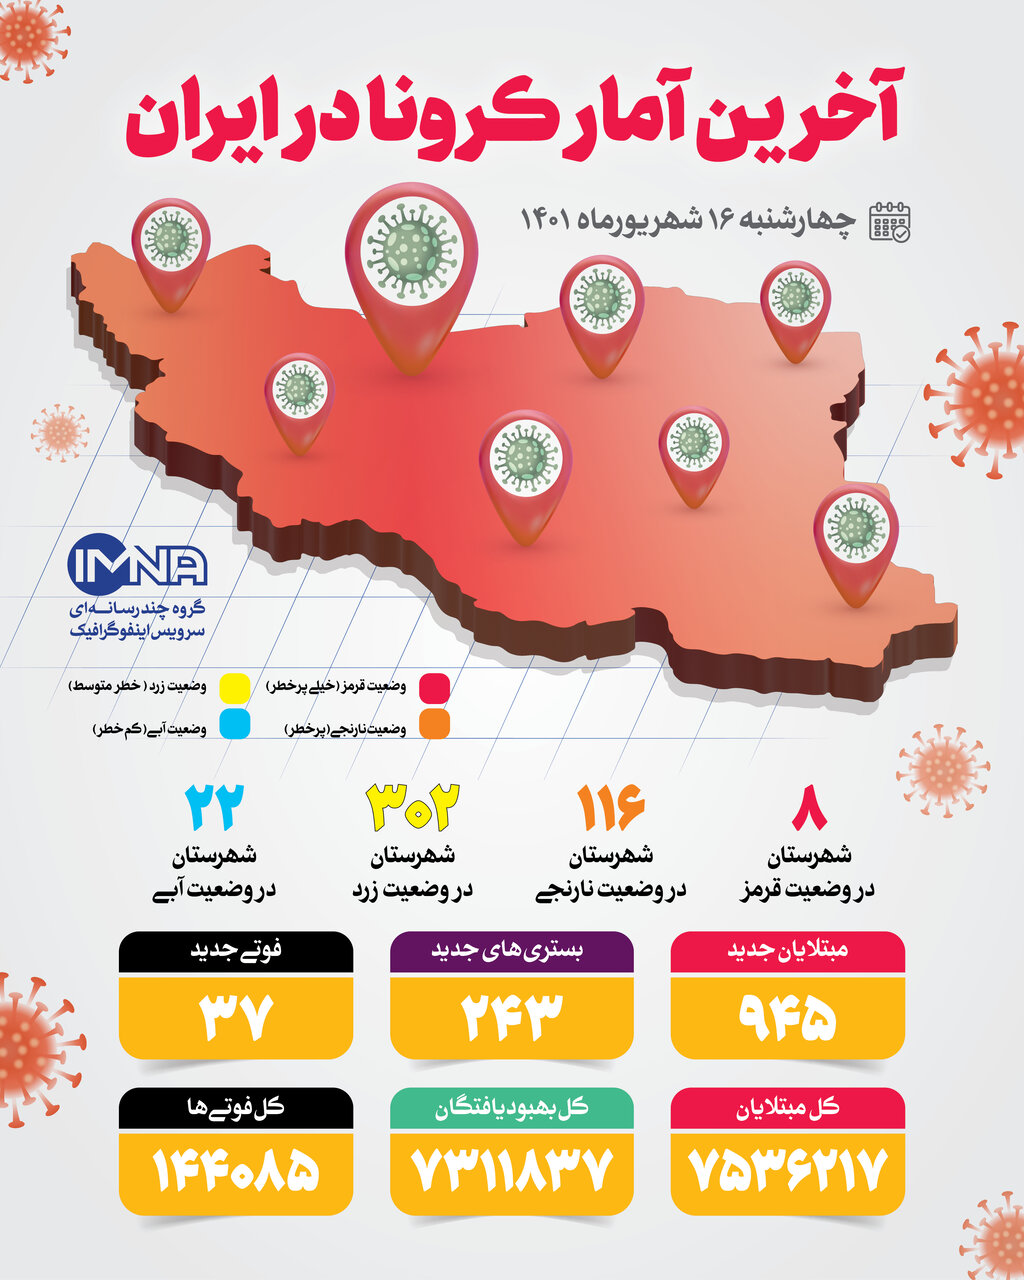 آمار کرونا امروز در ایران چهارشنبه ۱۶ شهریور ۱۴۰۱ + وضعیت شهرهای کشور